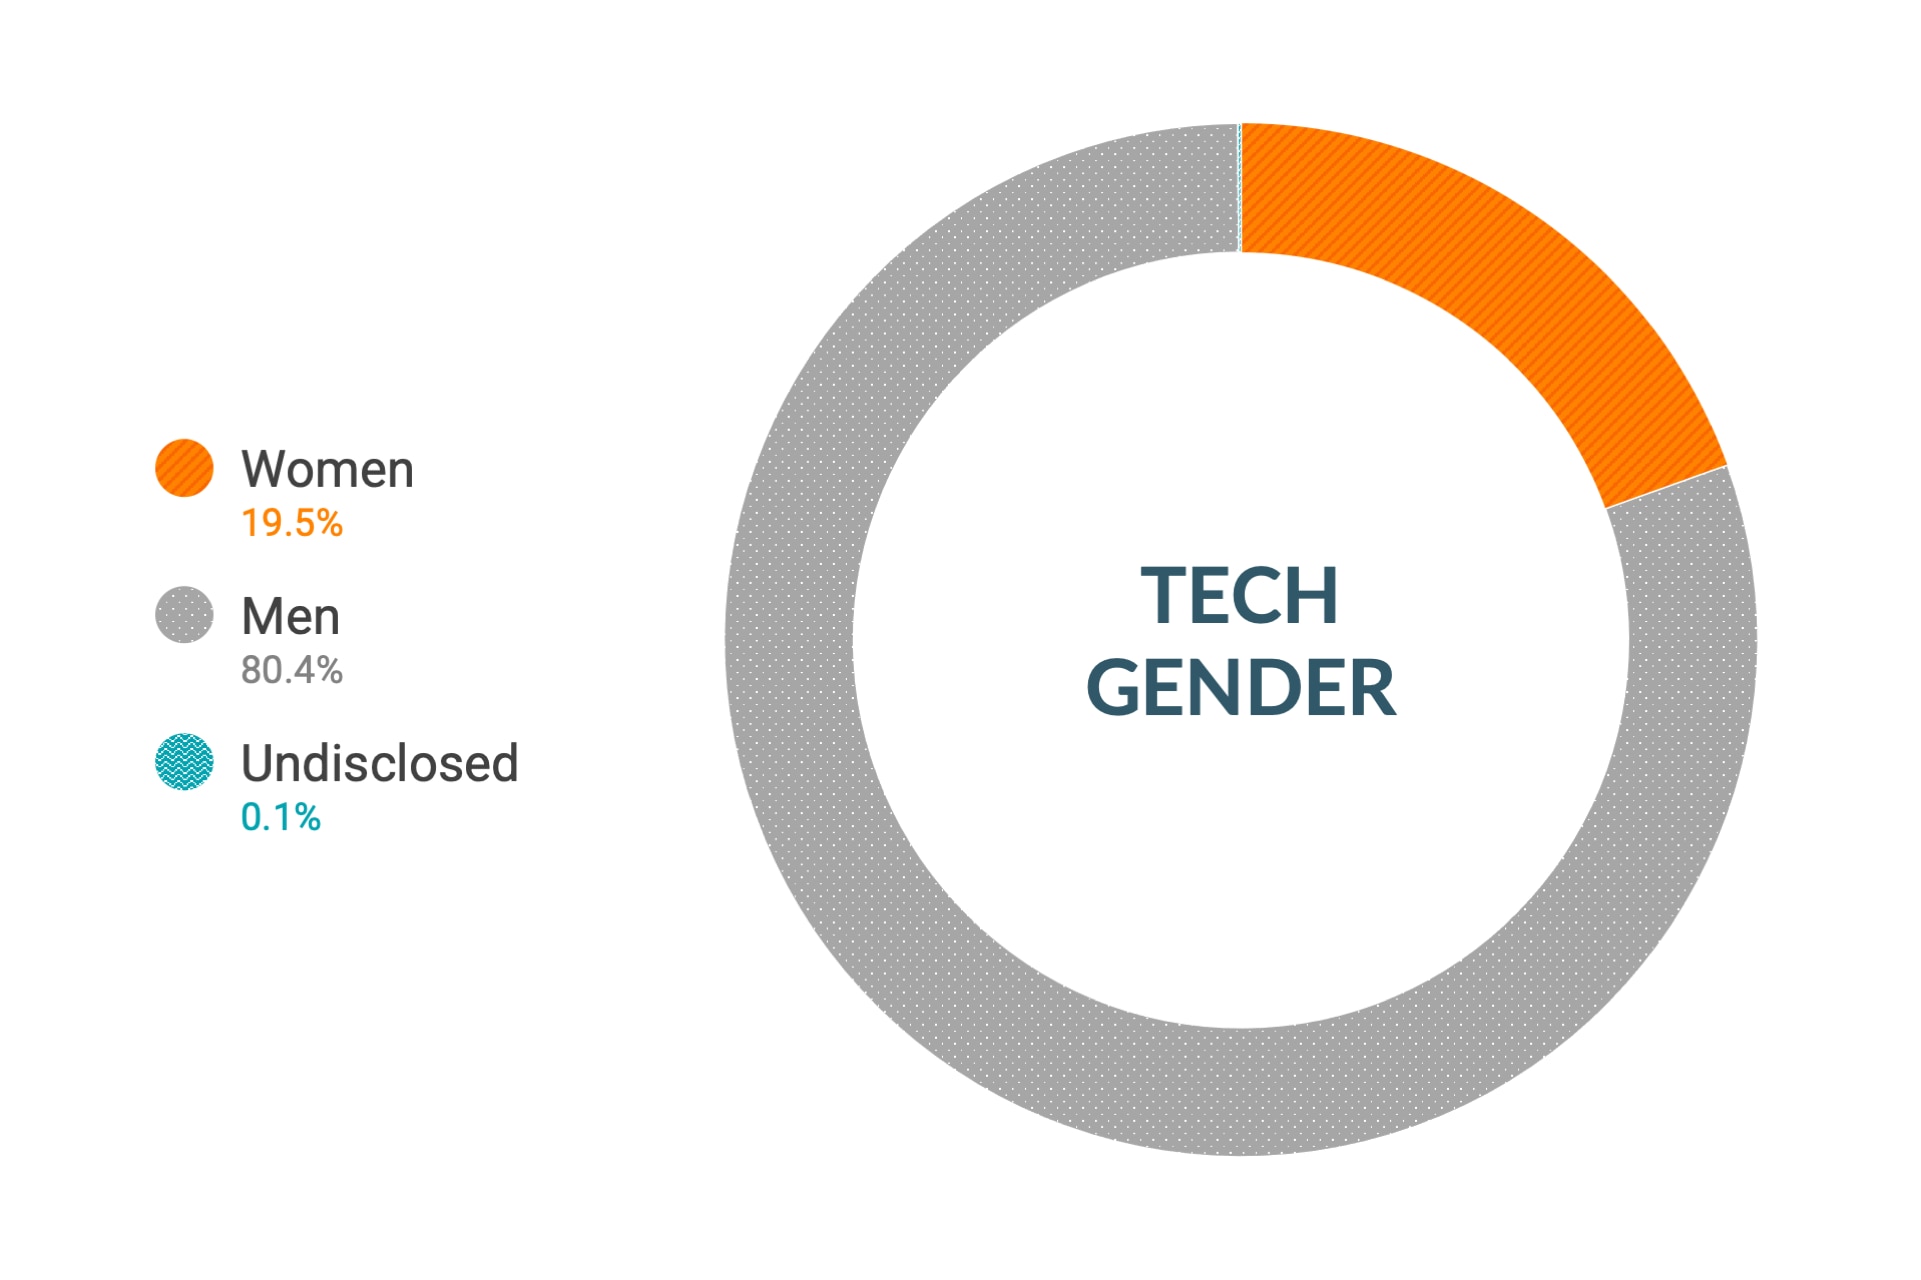 Dati Cloudera a livello globale su diversità e inclusione di genere nei ruoli tecnici e ingegneristici: donne 19,5%, uomini 80,4%, non dichiarato 0,1%